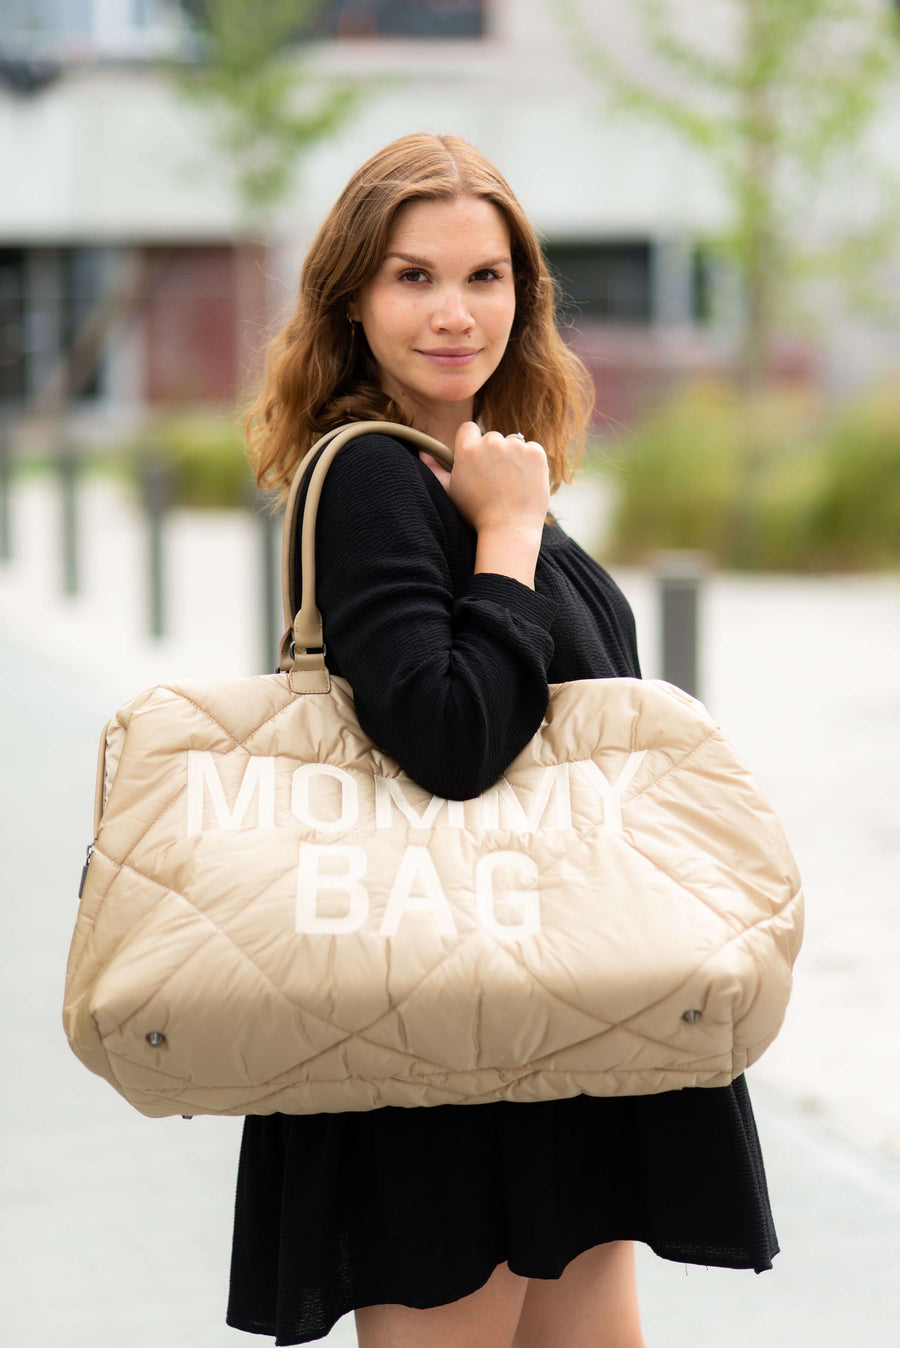 Mommy Bag Large - Matelassé Beige